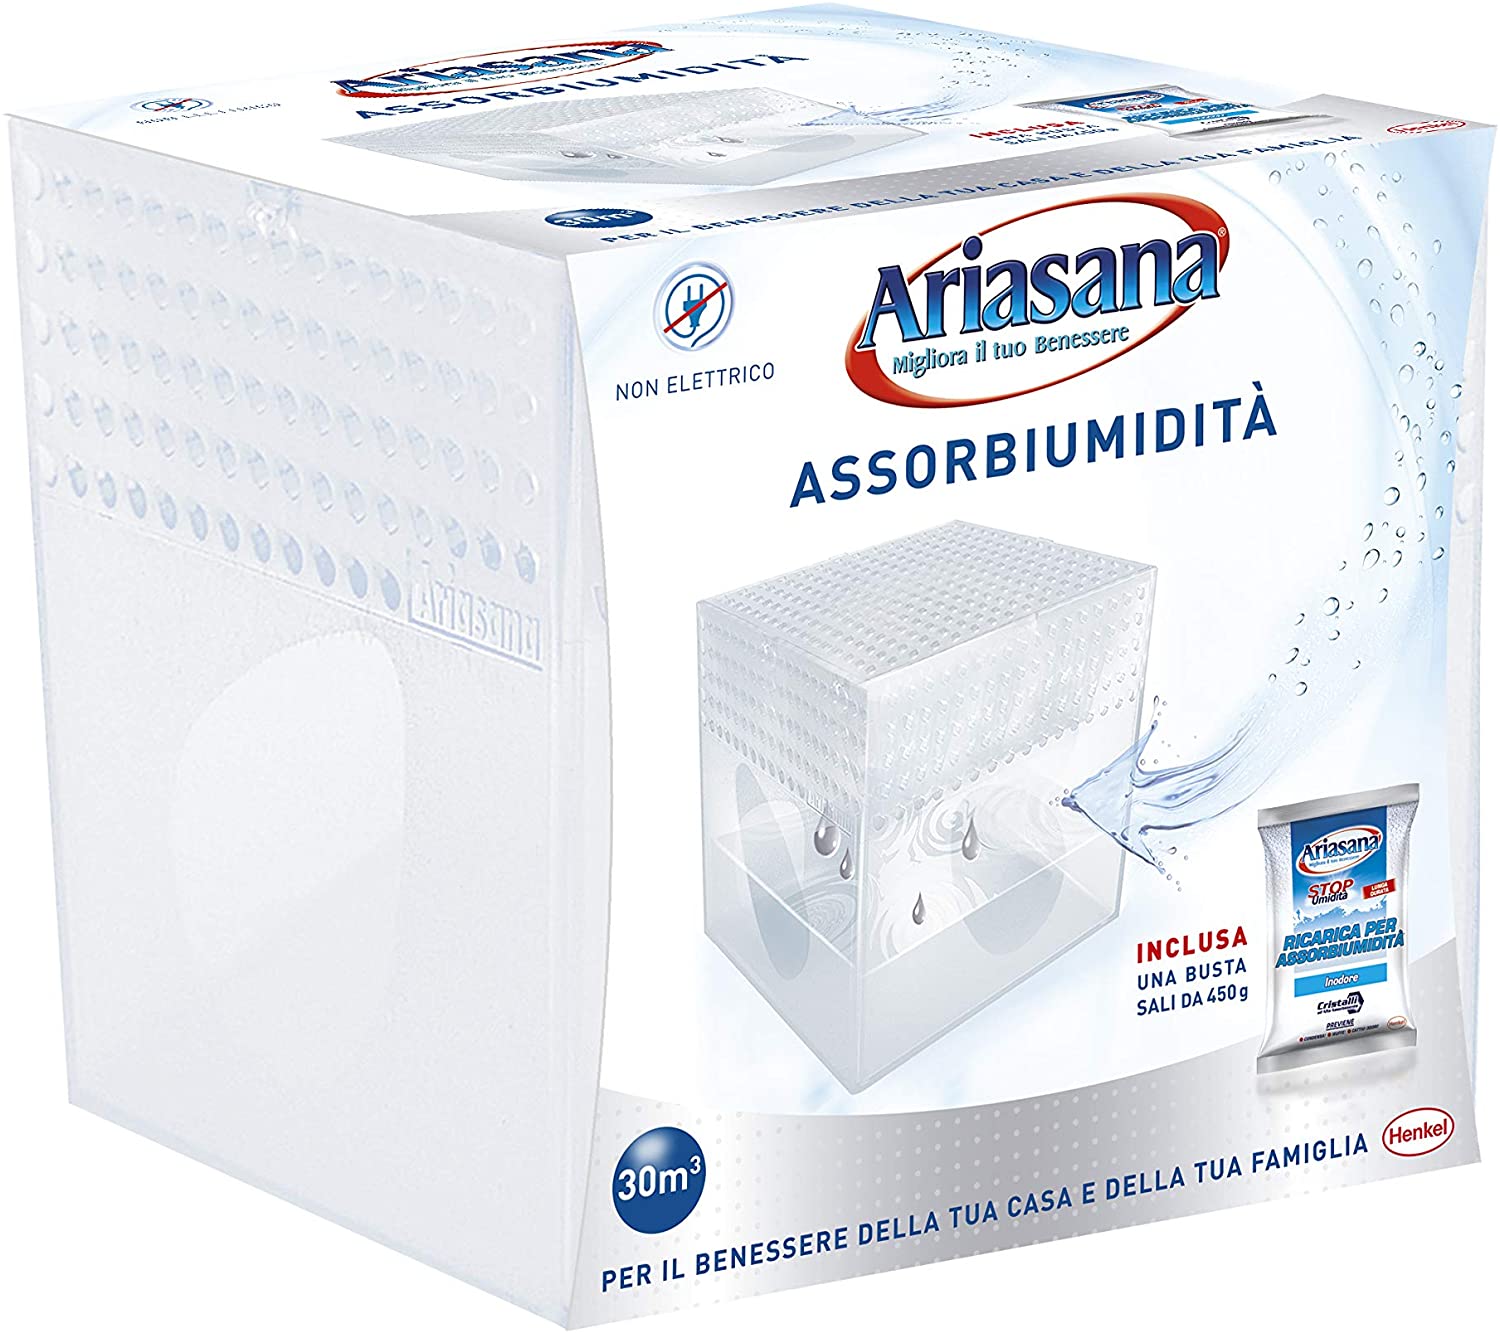 Ariasana 1939850 Kit Mini Deumidificatore, Assorbi umidità fino a 30 m³,  Assorbiumidità anche per cantina, stanzino, bagno, cucina, camper